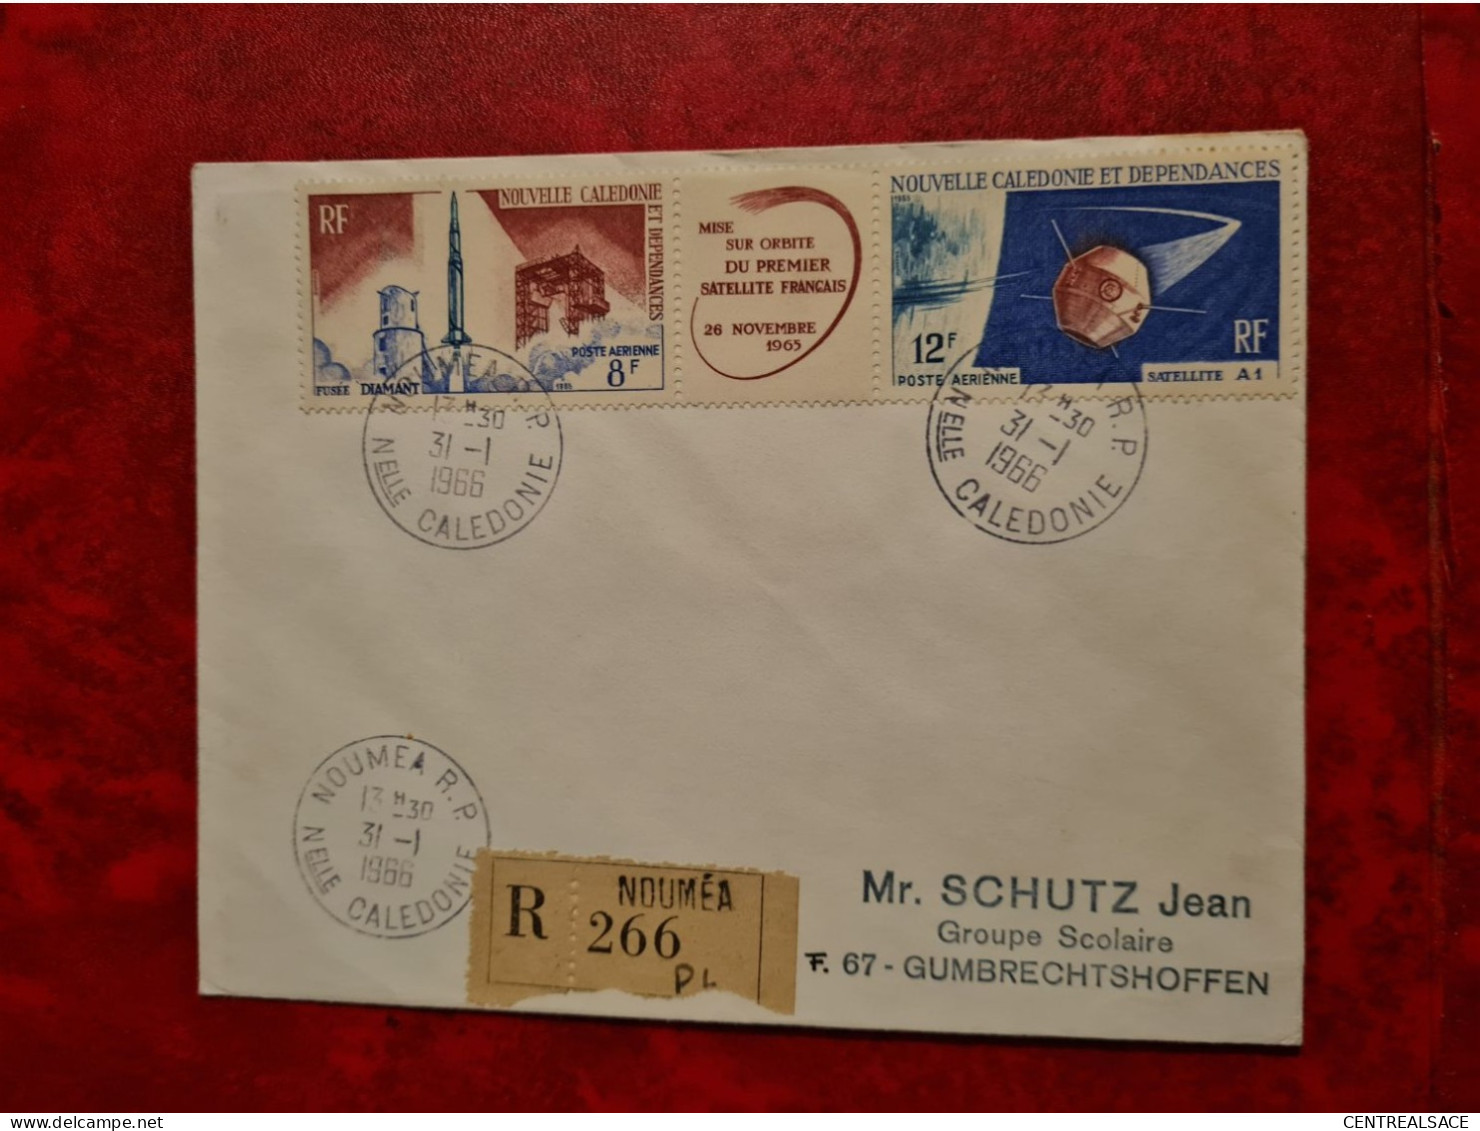 1966 NOUVELE CALEDONIE RECOMMADE  NOUMEA  1ER SATELLITE FRANCAIS - Lettres & Documents